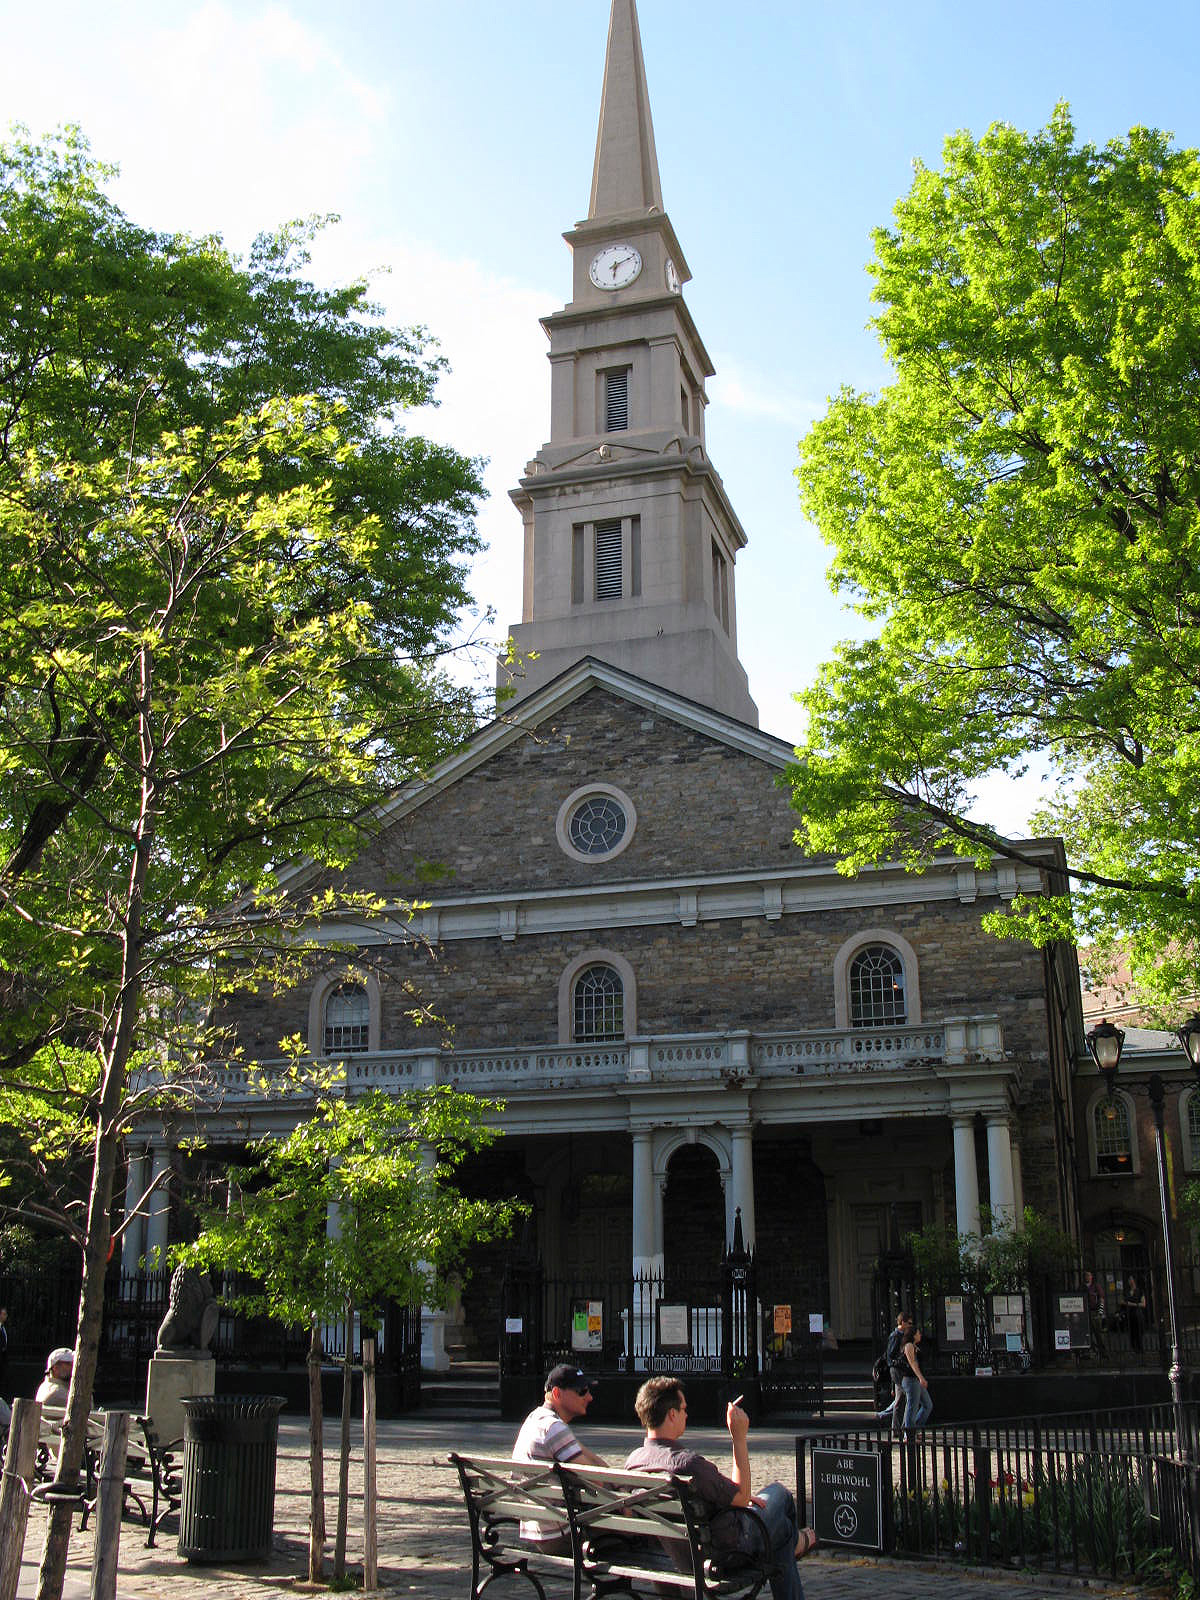 Saint Marks Church In The Bowery | 131 E 10th St, New York, NY, 10003 | +1 (212) 674-6377